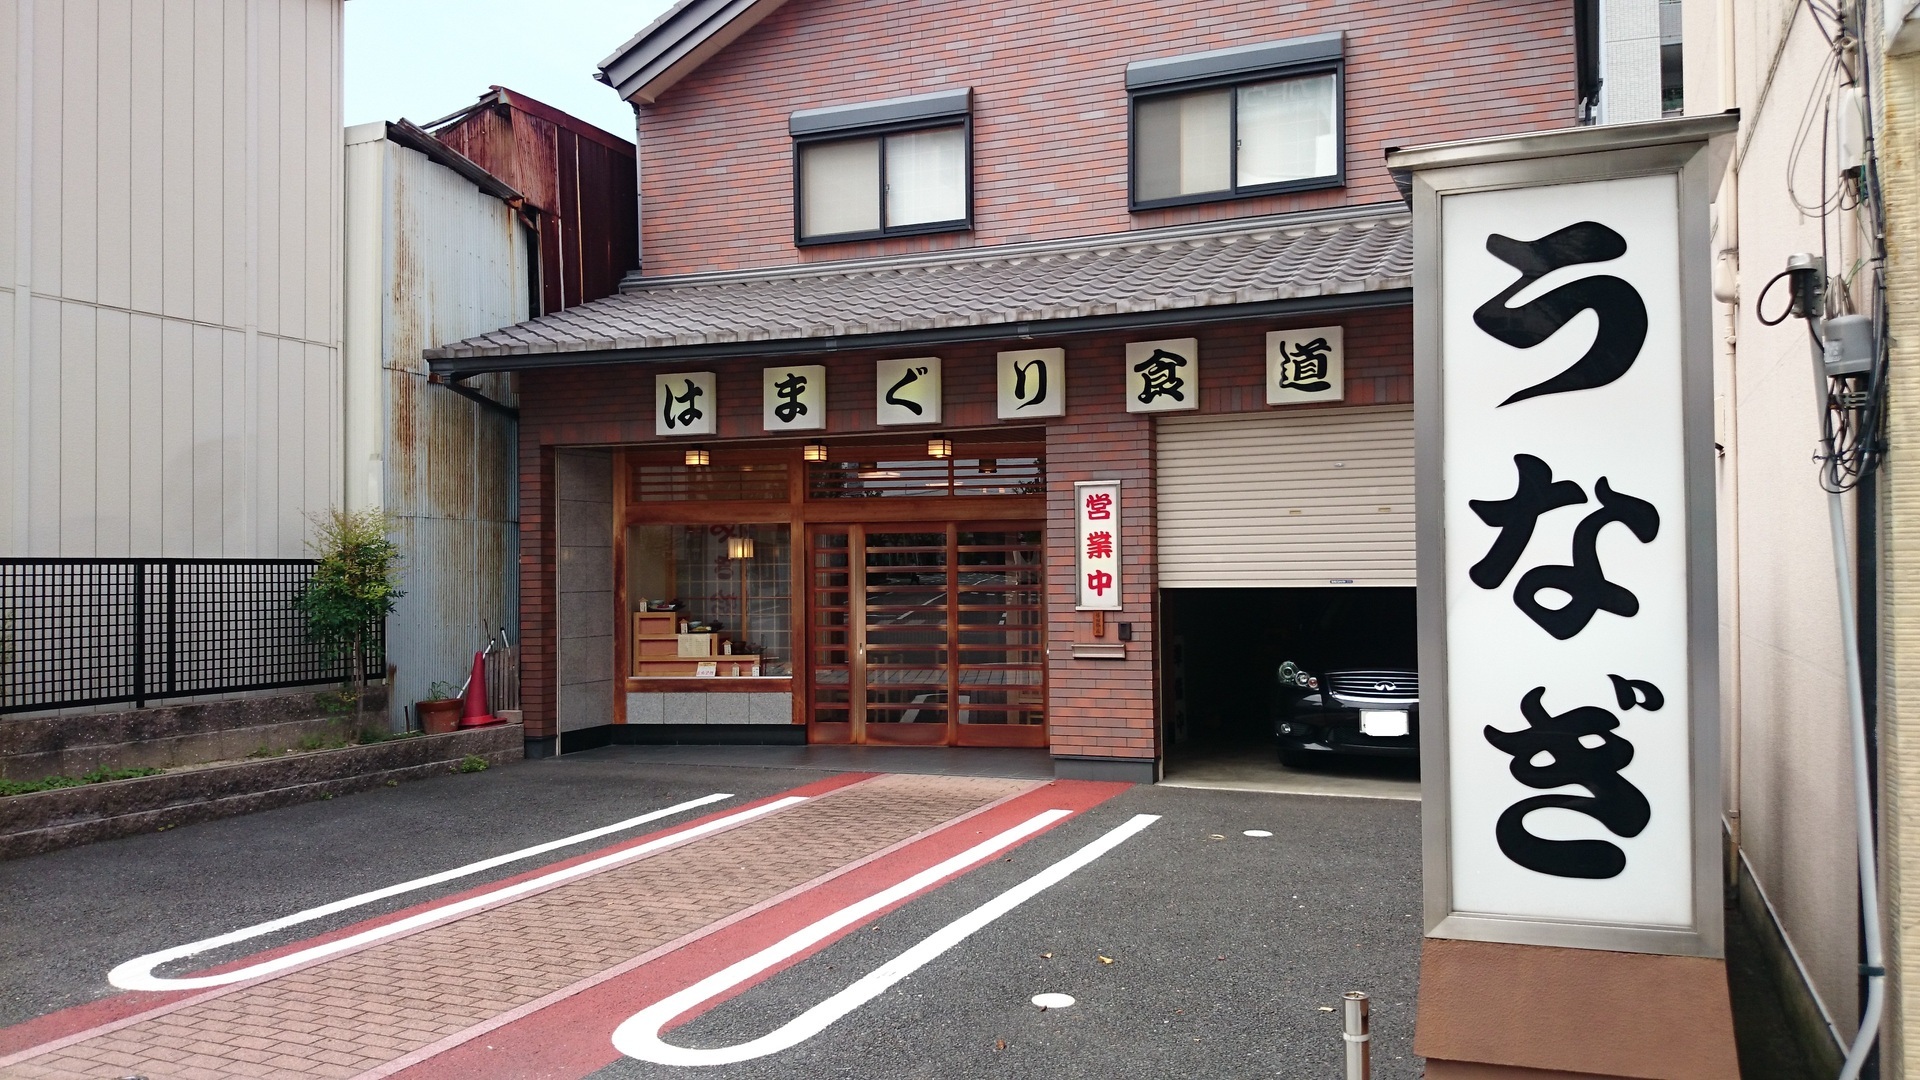 三重県で美味しいはまぐり はまぐり食道 さんからの安永餅 現役店長の自動車売買お任せブログ